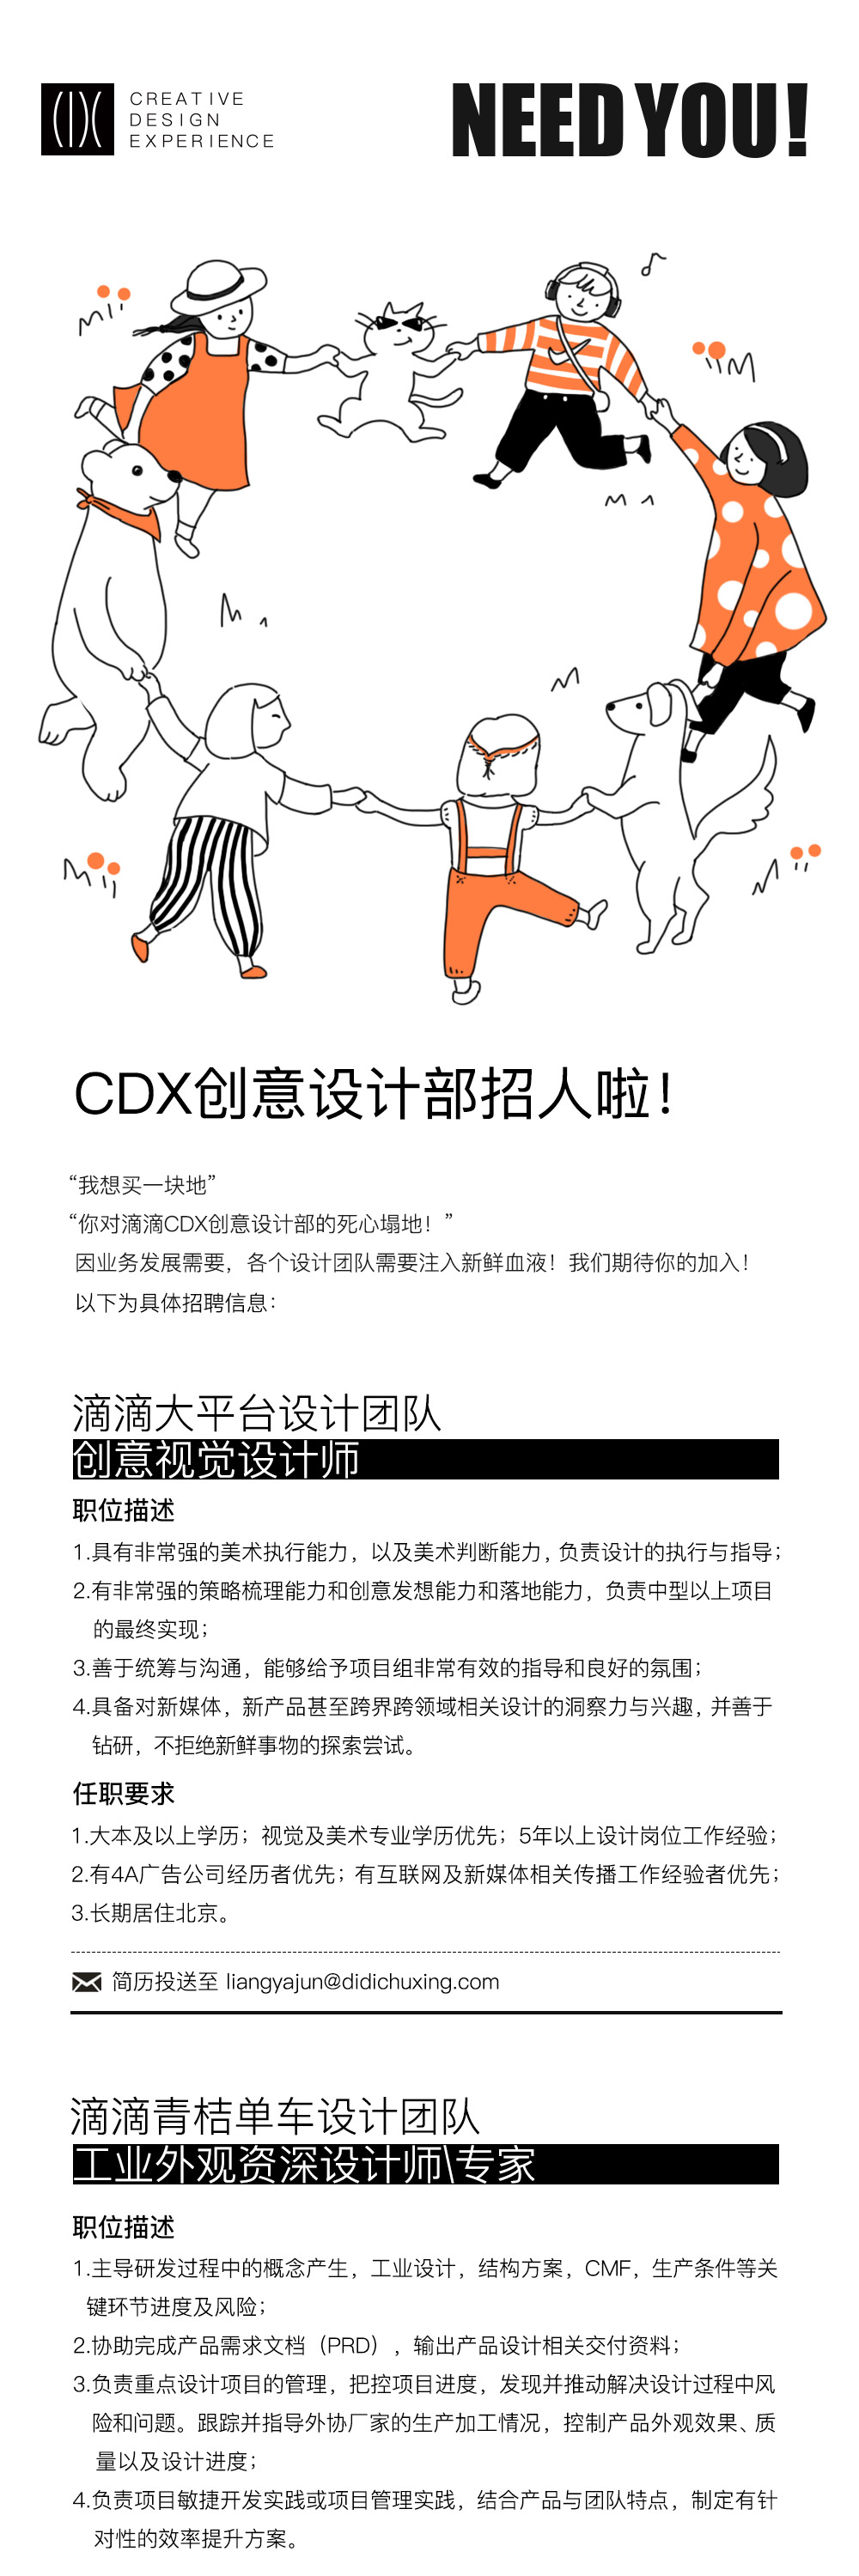 CDX招聘咨询 - 图1